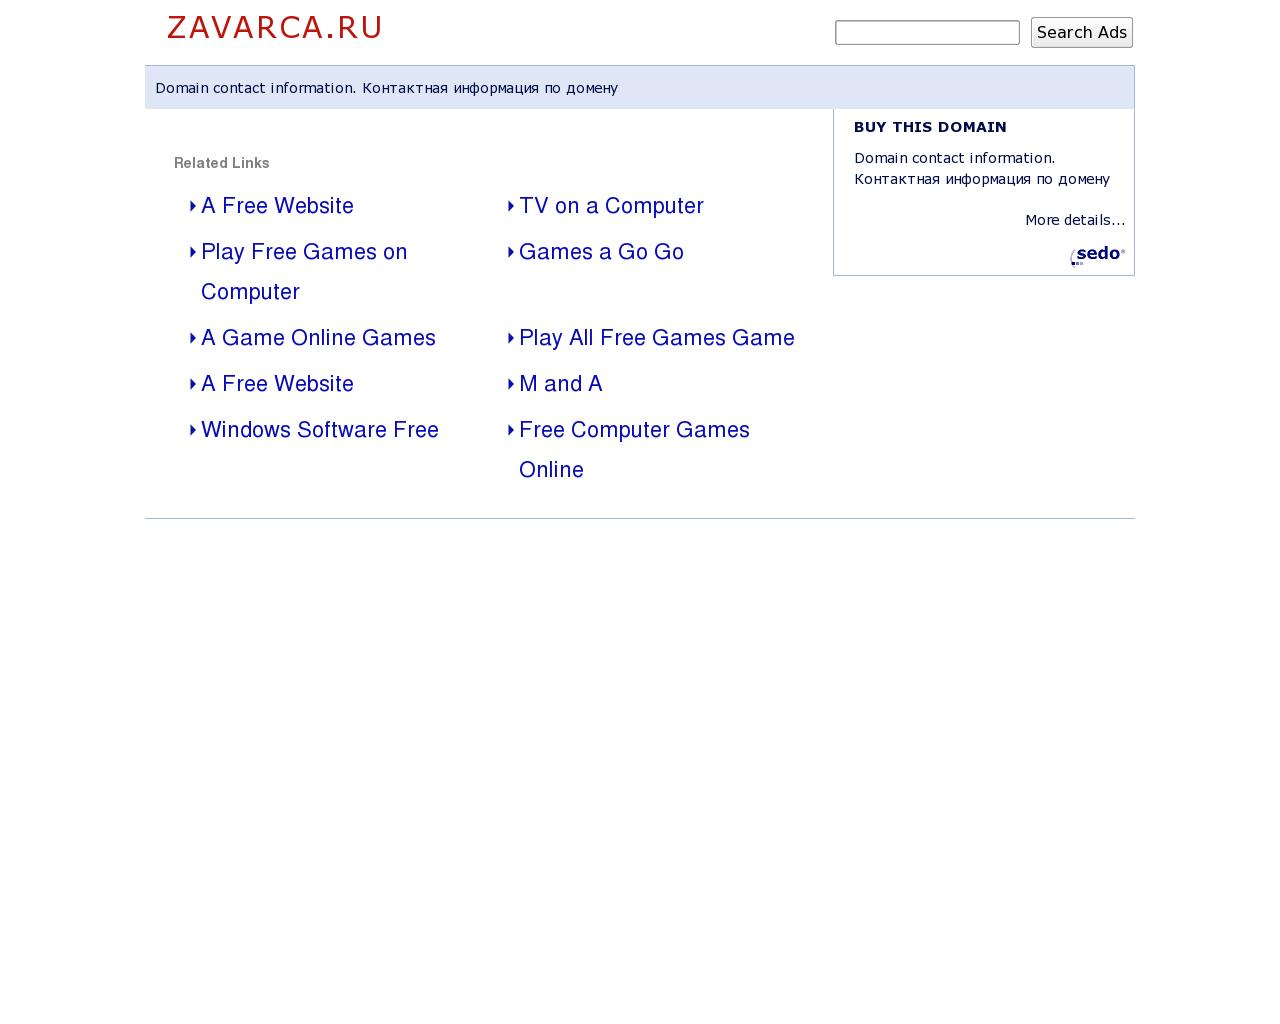 Изображение сайта zavarca.ru в разрешении 1280x1024